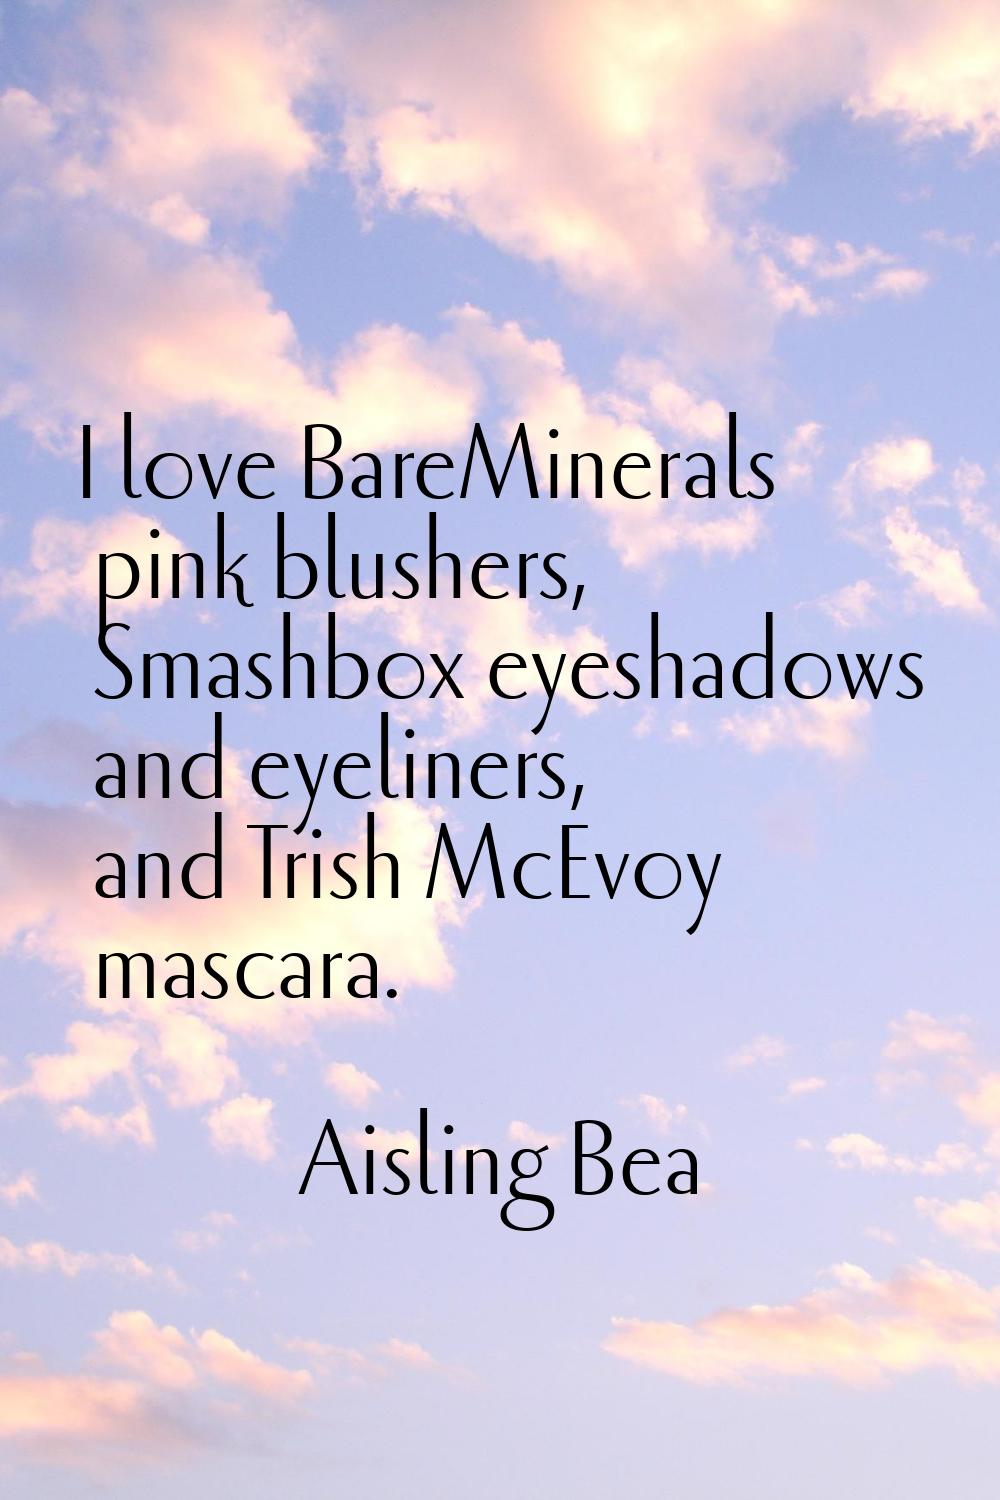 I love BareMinerals pink blushers, Smashbox eyeshadows and eyeliners, and Trish McEvoy mascara.